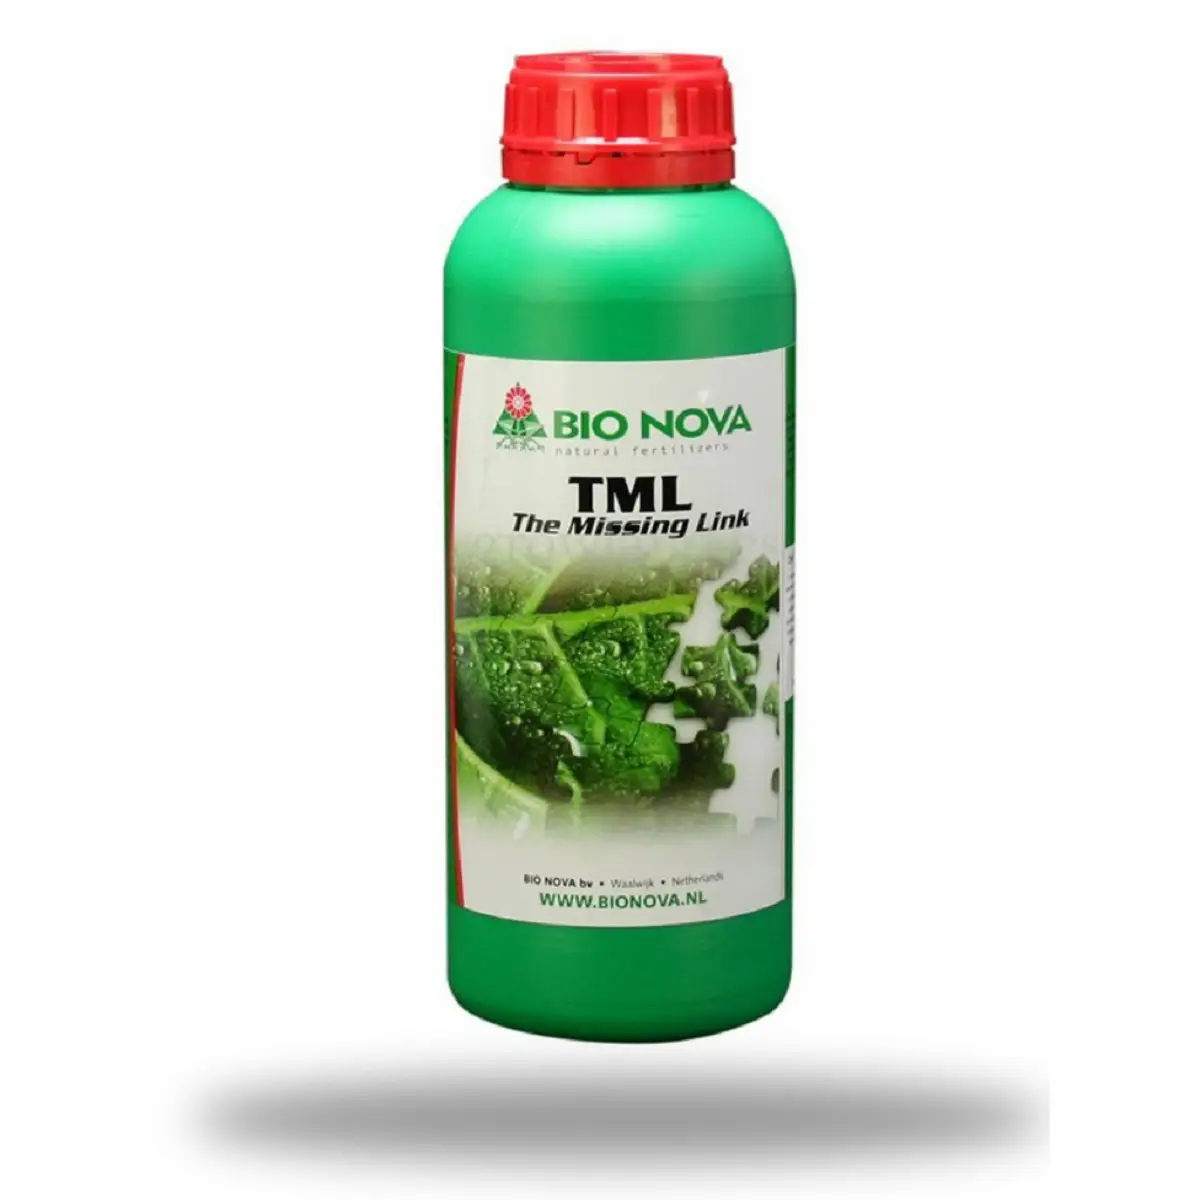 Stimulateur de croissance et floraison Bio Nova TML The Missing Link 1 litre